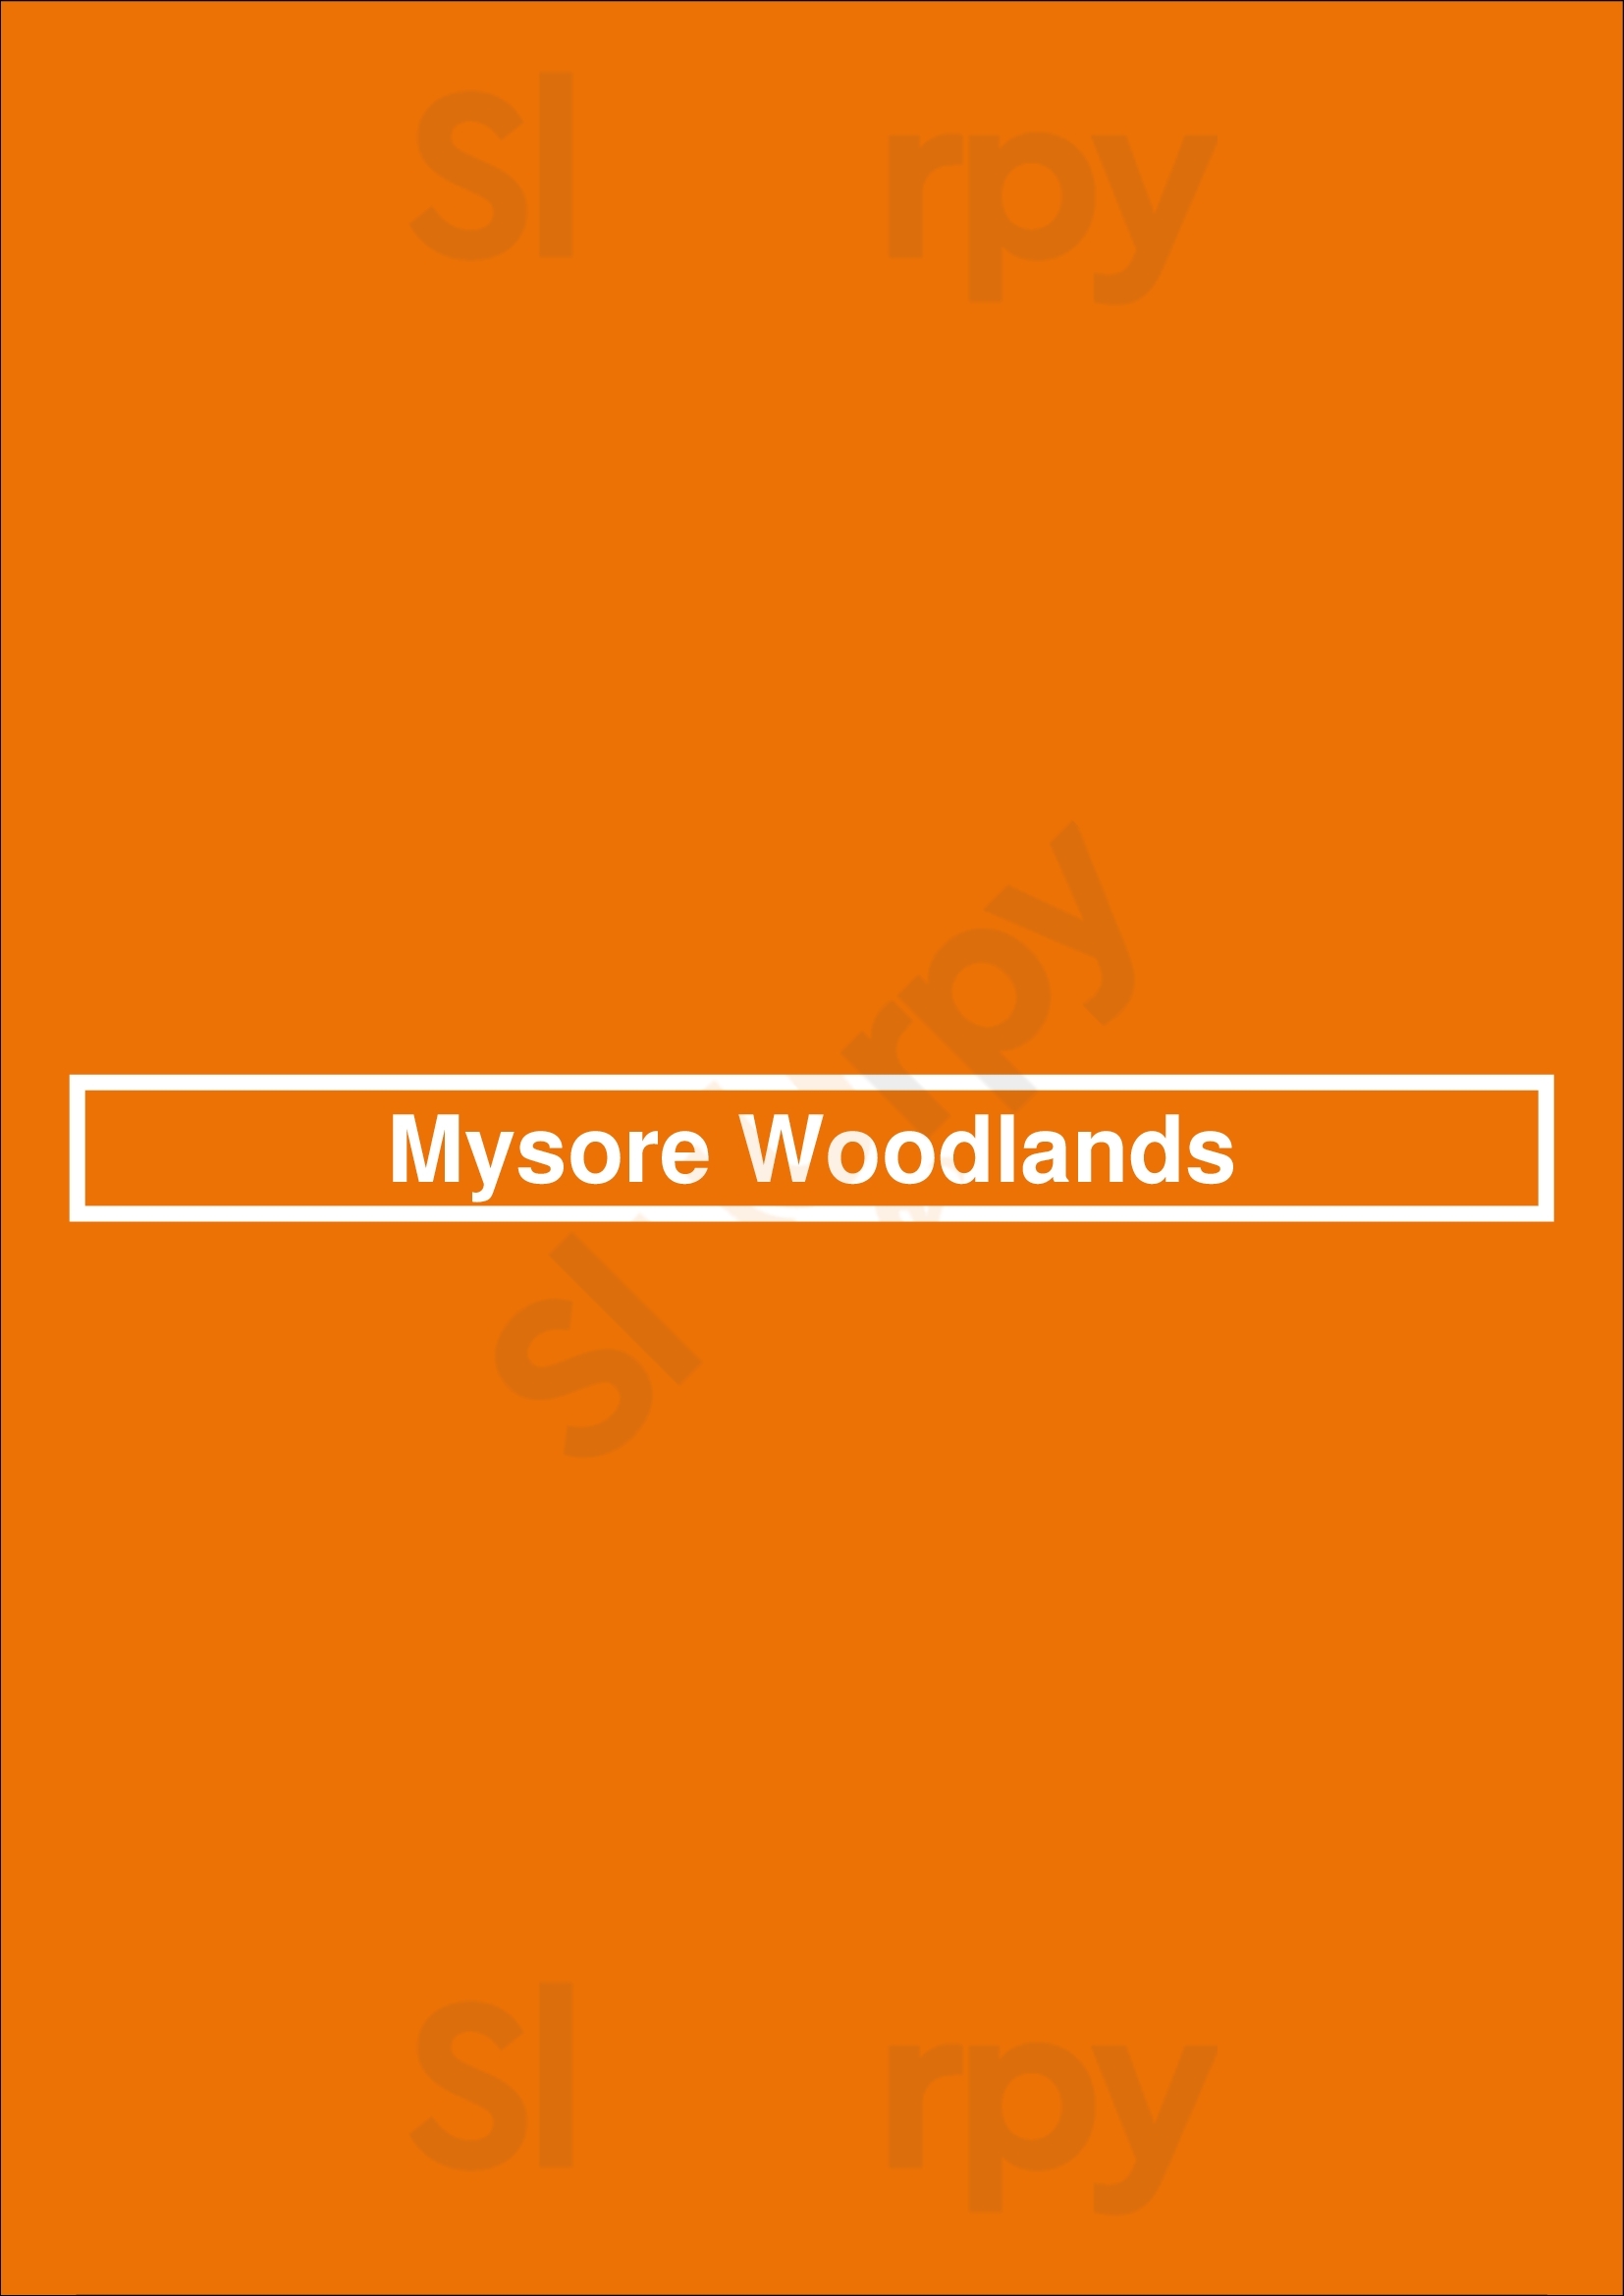 Mysore Woodlands Chicago Menu - 1